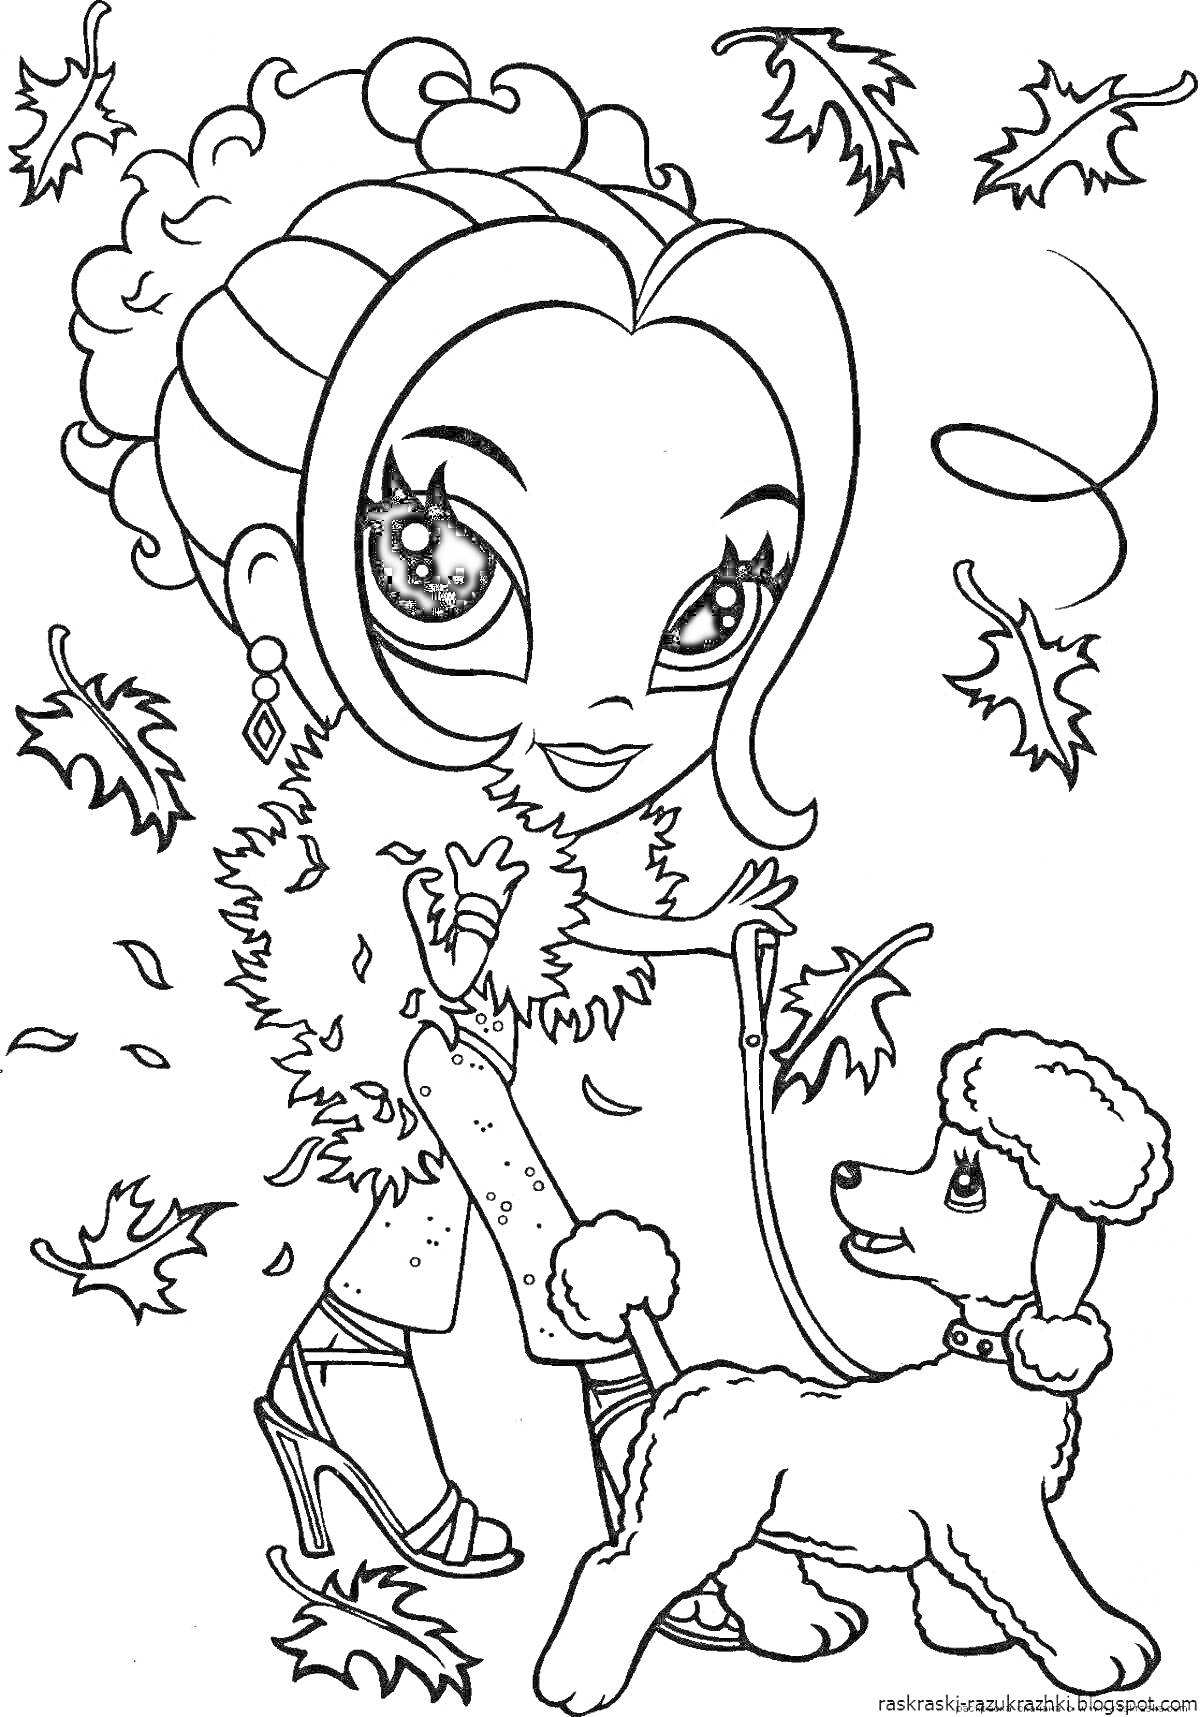 Раскраска Девочка с собачкой на прогулке осенью, собачка на поводке, падающие листья